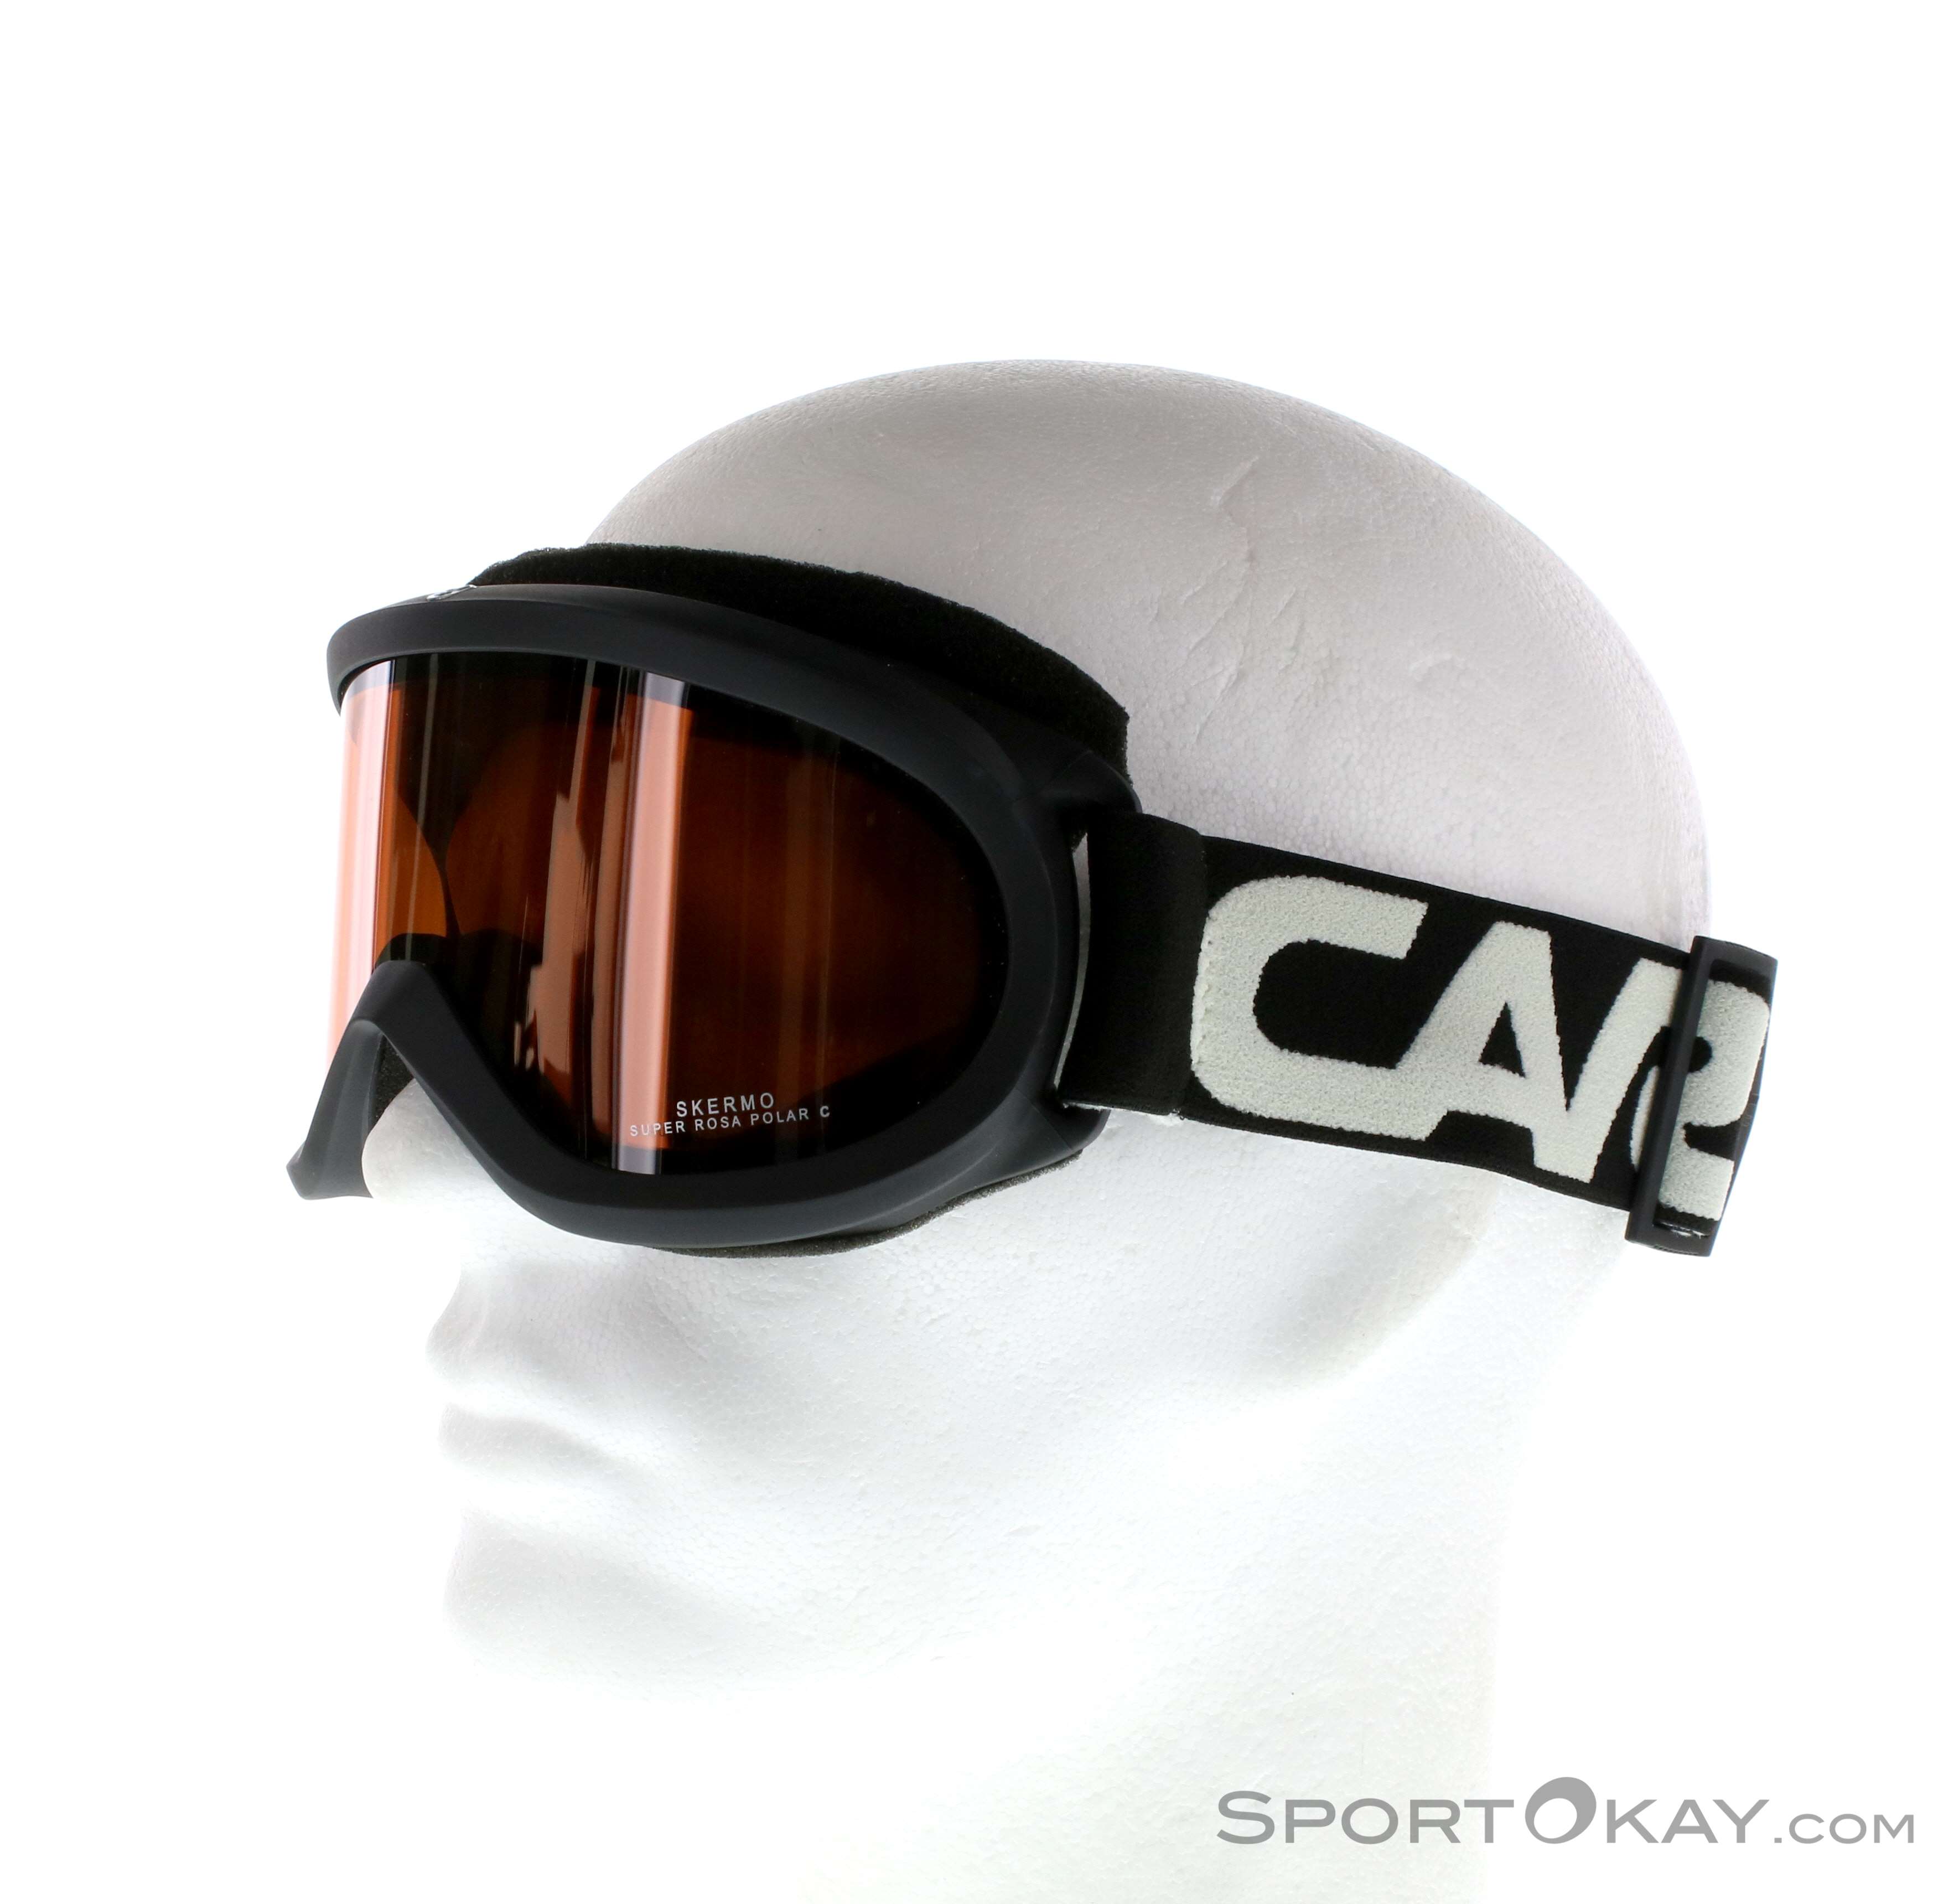 Carrera Skermo Polarized OTG Skibrille - Skibrillen - Skibrillen & Zubehör  - Ski&Freeride - Alle